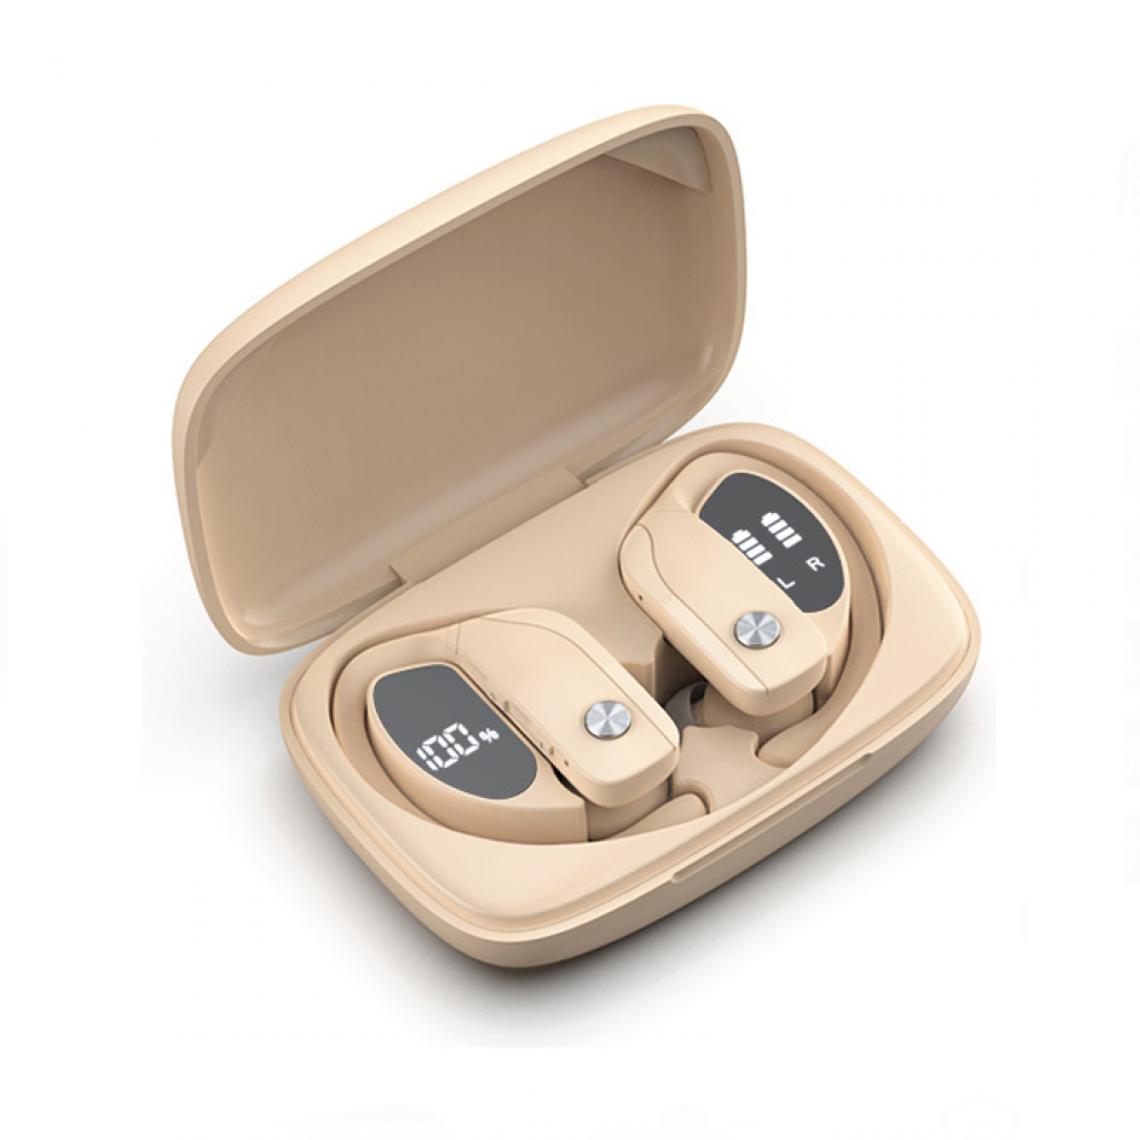 Universal - Bouchons d'oreille Bluetooth sans fil pour le sport Casque stéréo sans fil réel Casque basse Casque avec microphone Téléphone mobile TV | Casque Bluetooth (beige) - Casque